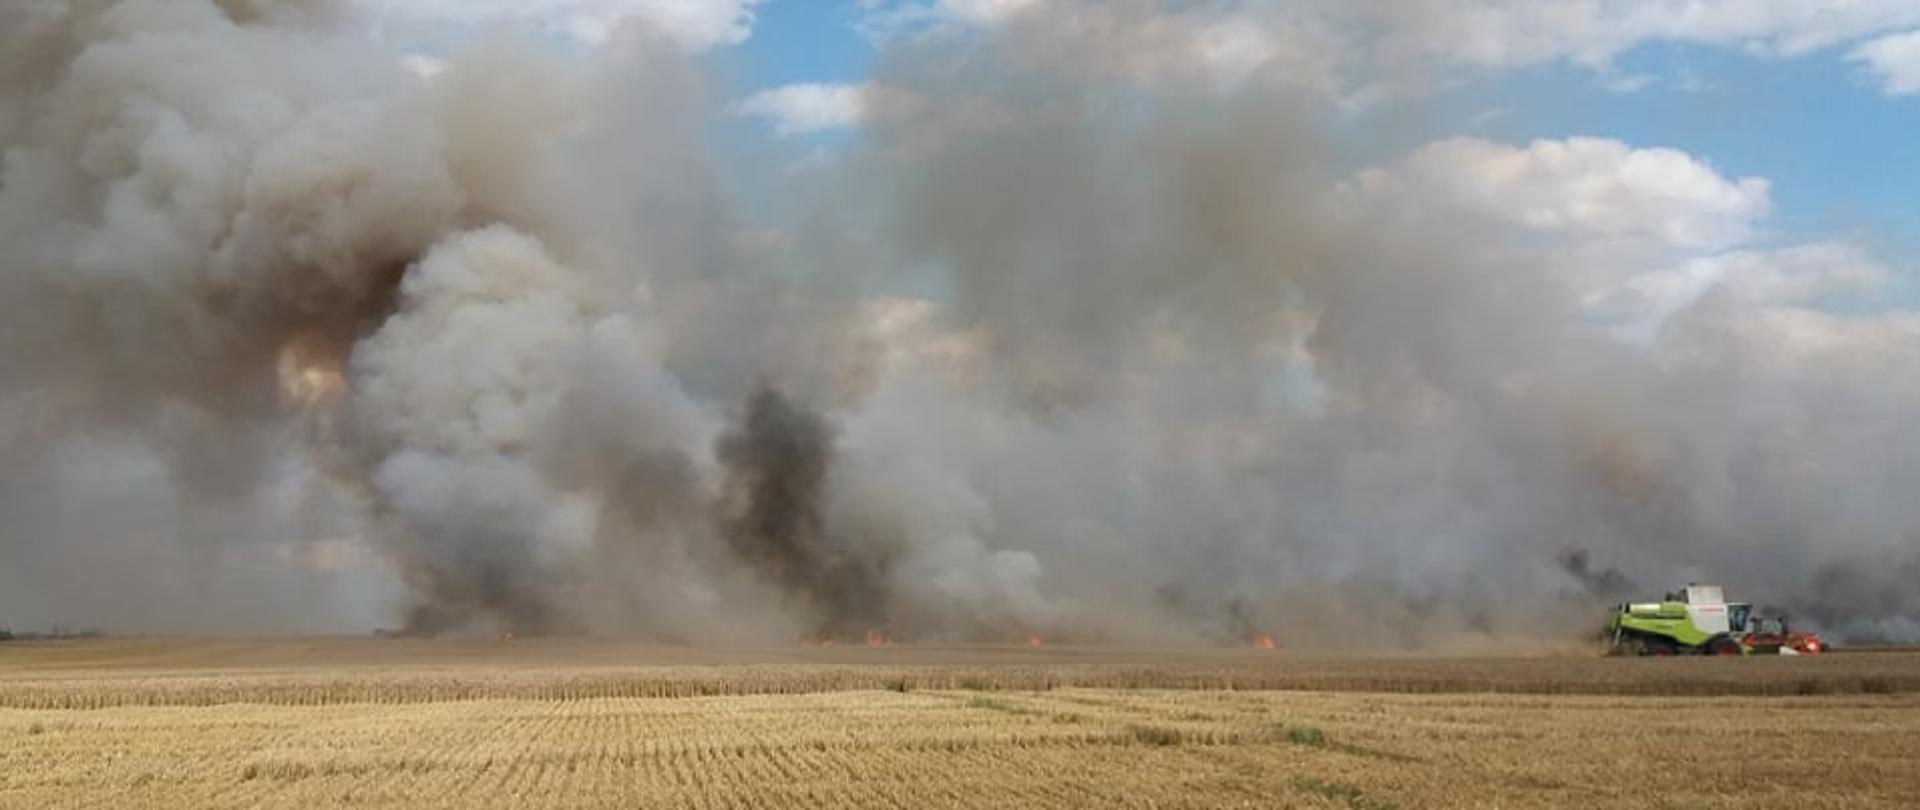 Zdjęcie przedstawia rozwijający się pożar zboża na pniu.